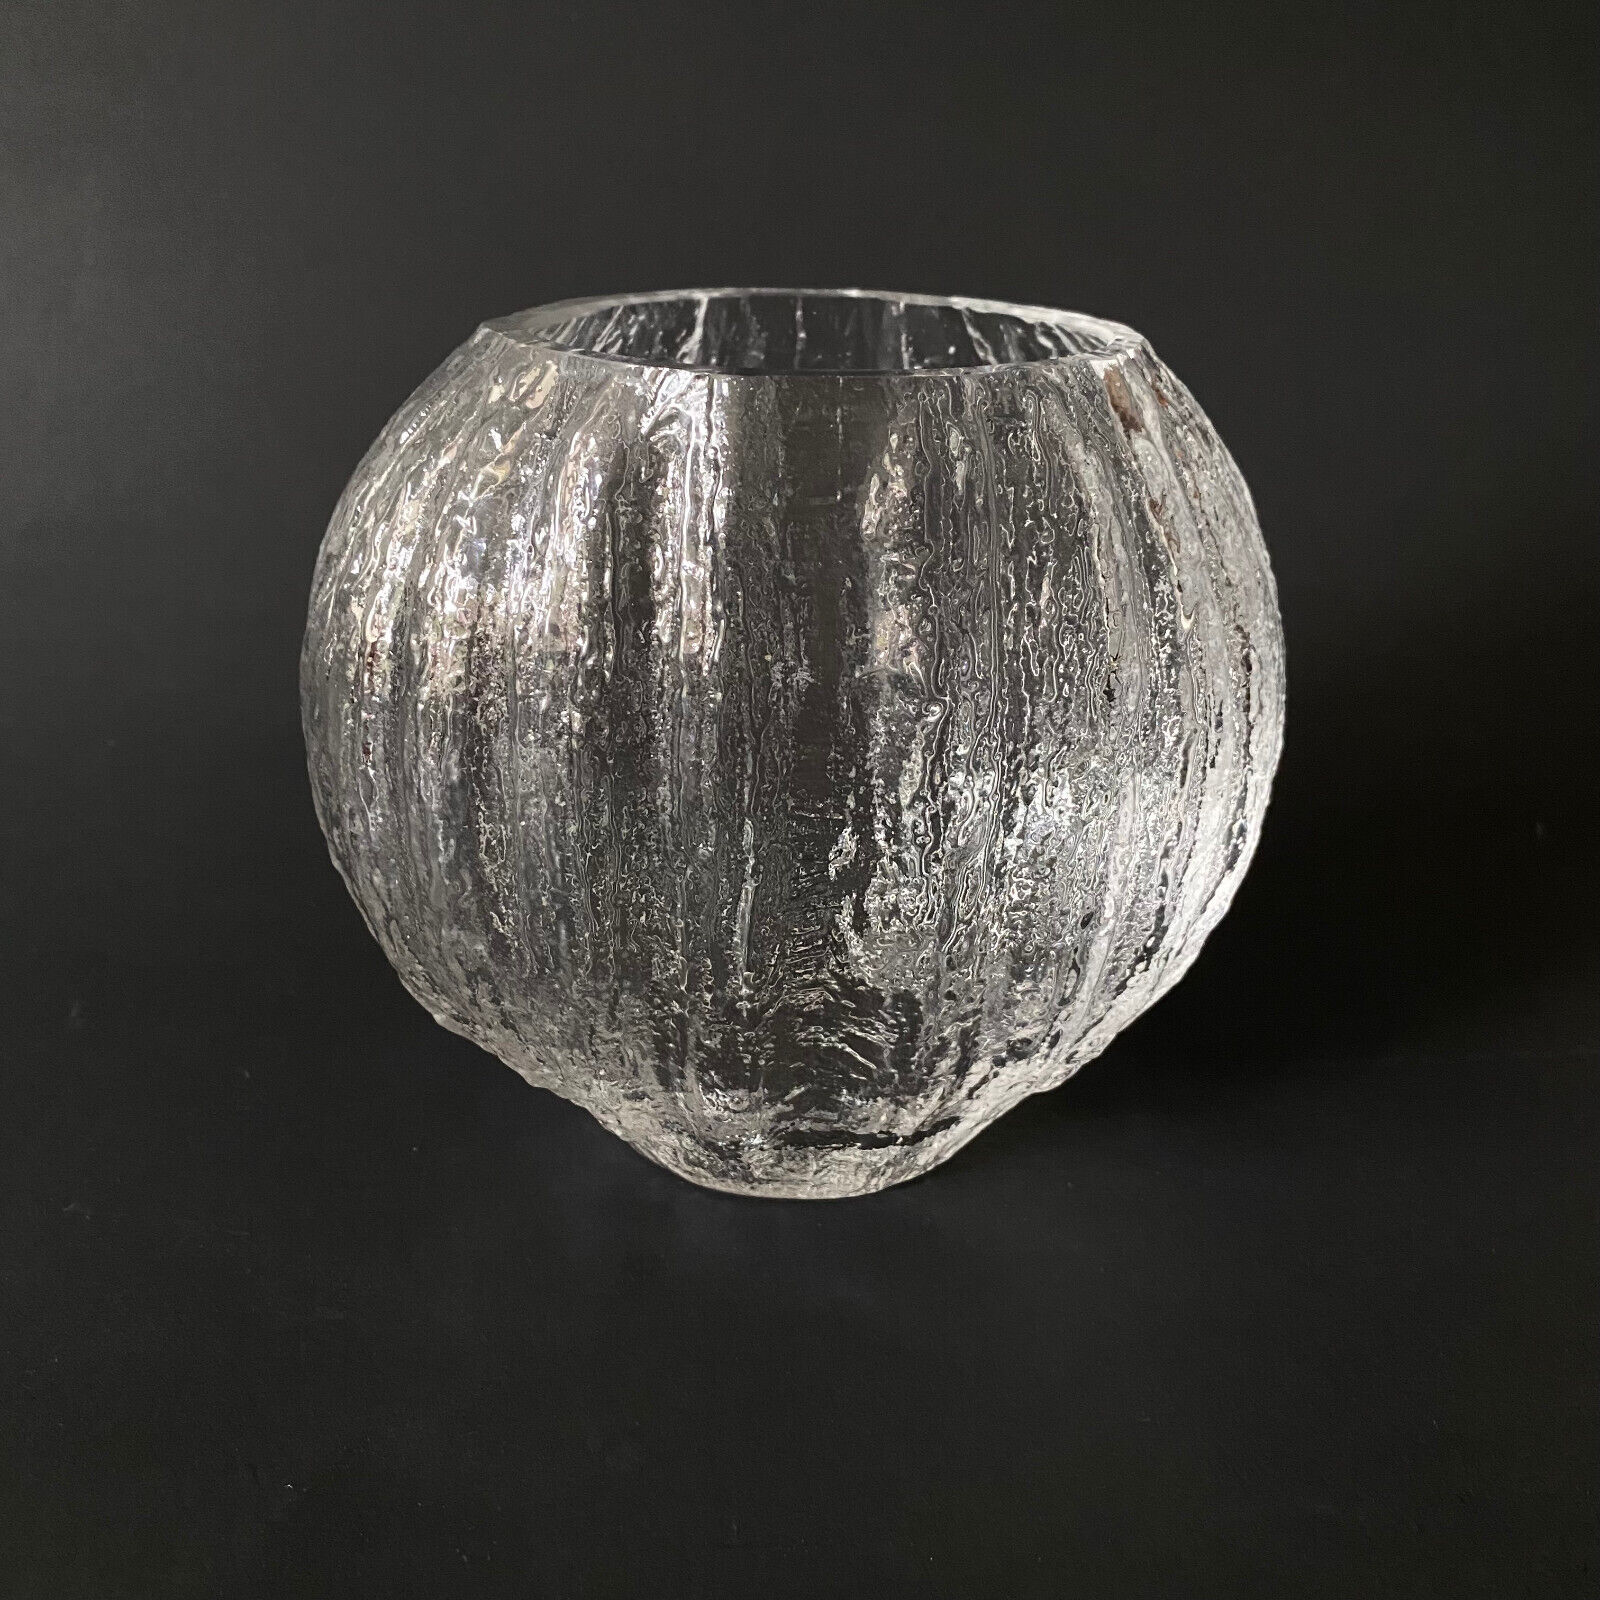 Timo Sarpaneva Glass Vase Iittala Finland Textured vase Signed TS mid century